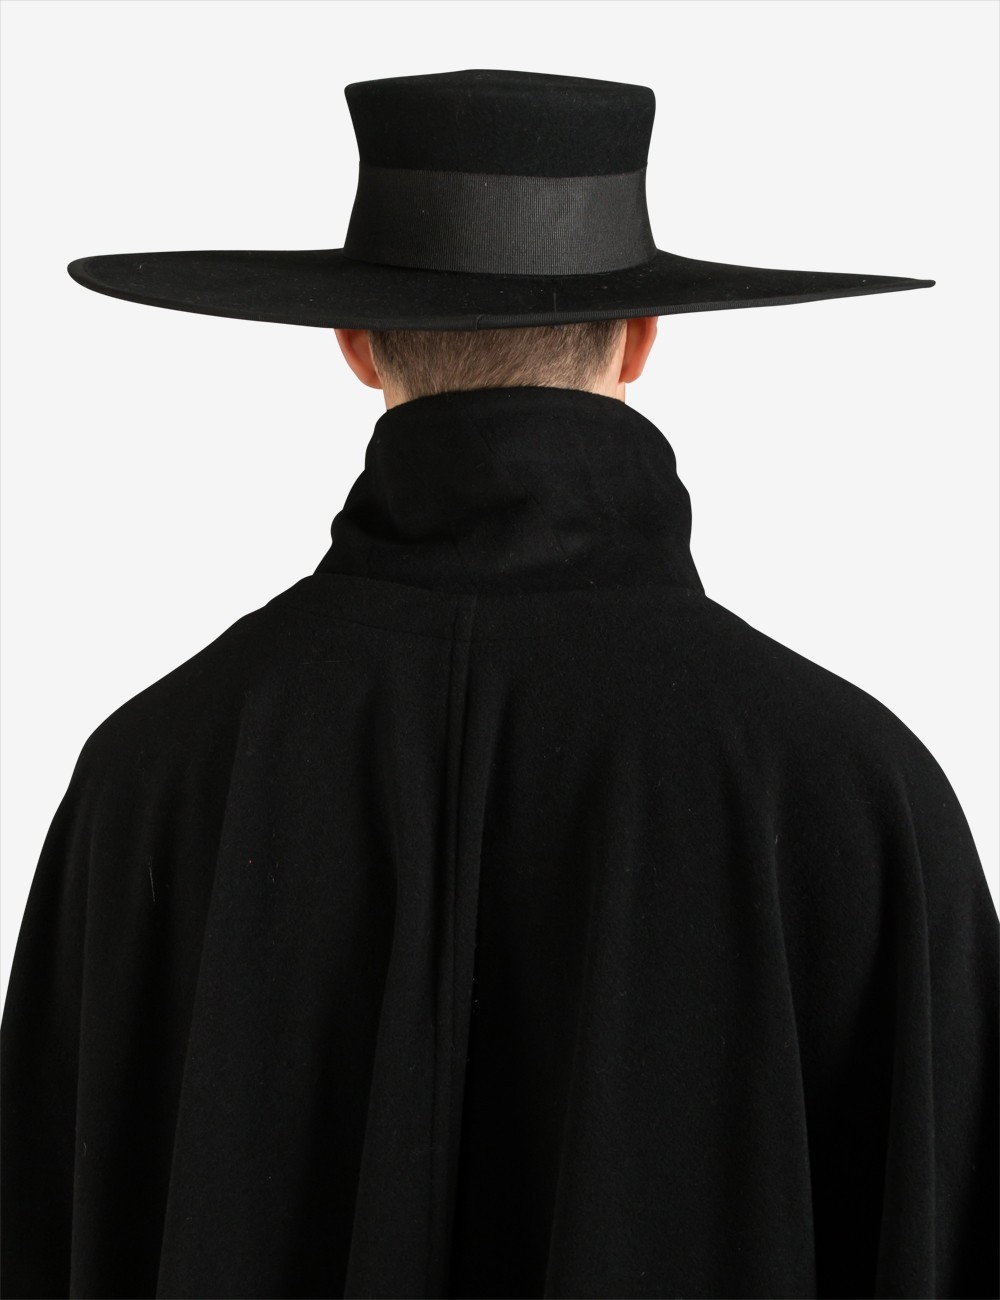 Dr hat. Шляпа священника. Шляпа у священнослужителей. Католическая шляпа. Готические шляпы мужские.